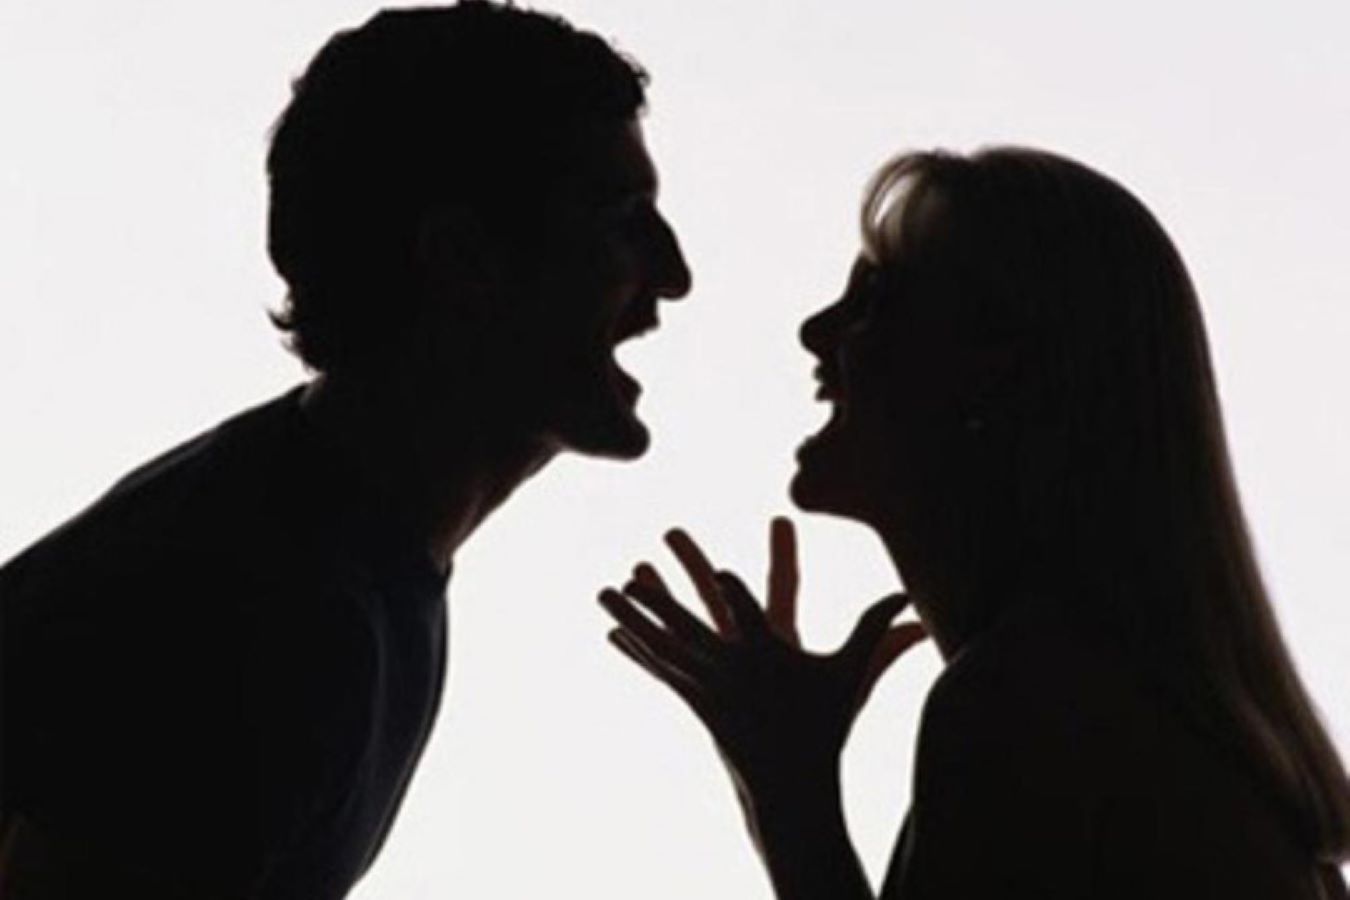 الطلاق يهدد التماسك المجتمعي  أسباب تنسف العلاقة الزوجية وخبراء يكشفون طرقًا للحفاظ عليها